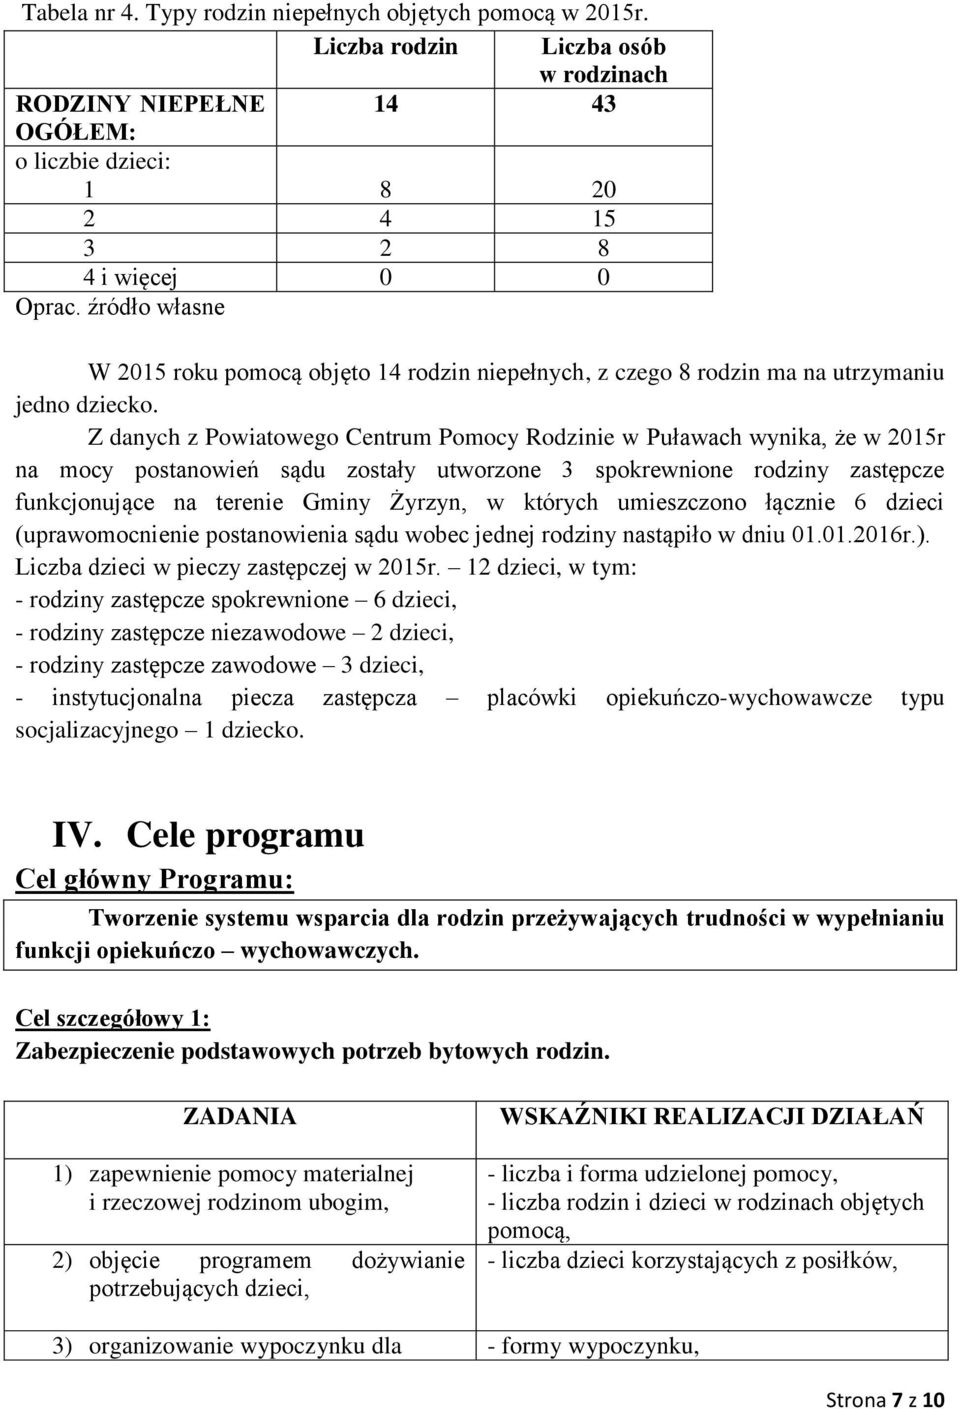 Z danych z Powiatowego Centrum Pomocy Rodzinie w Puławach wynika, że w 2015r na mocy postanowień sądu zostały utworzone 3 spokrewnione rodziny zastępcze funkcjonujące na terenie Gminy Żyrzyn, w